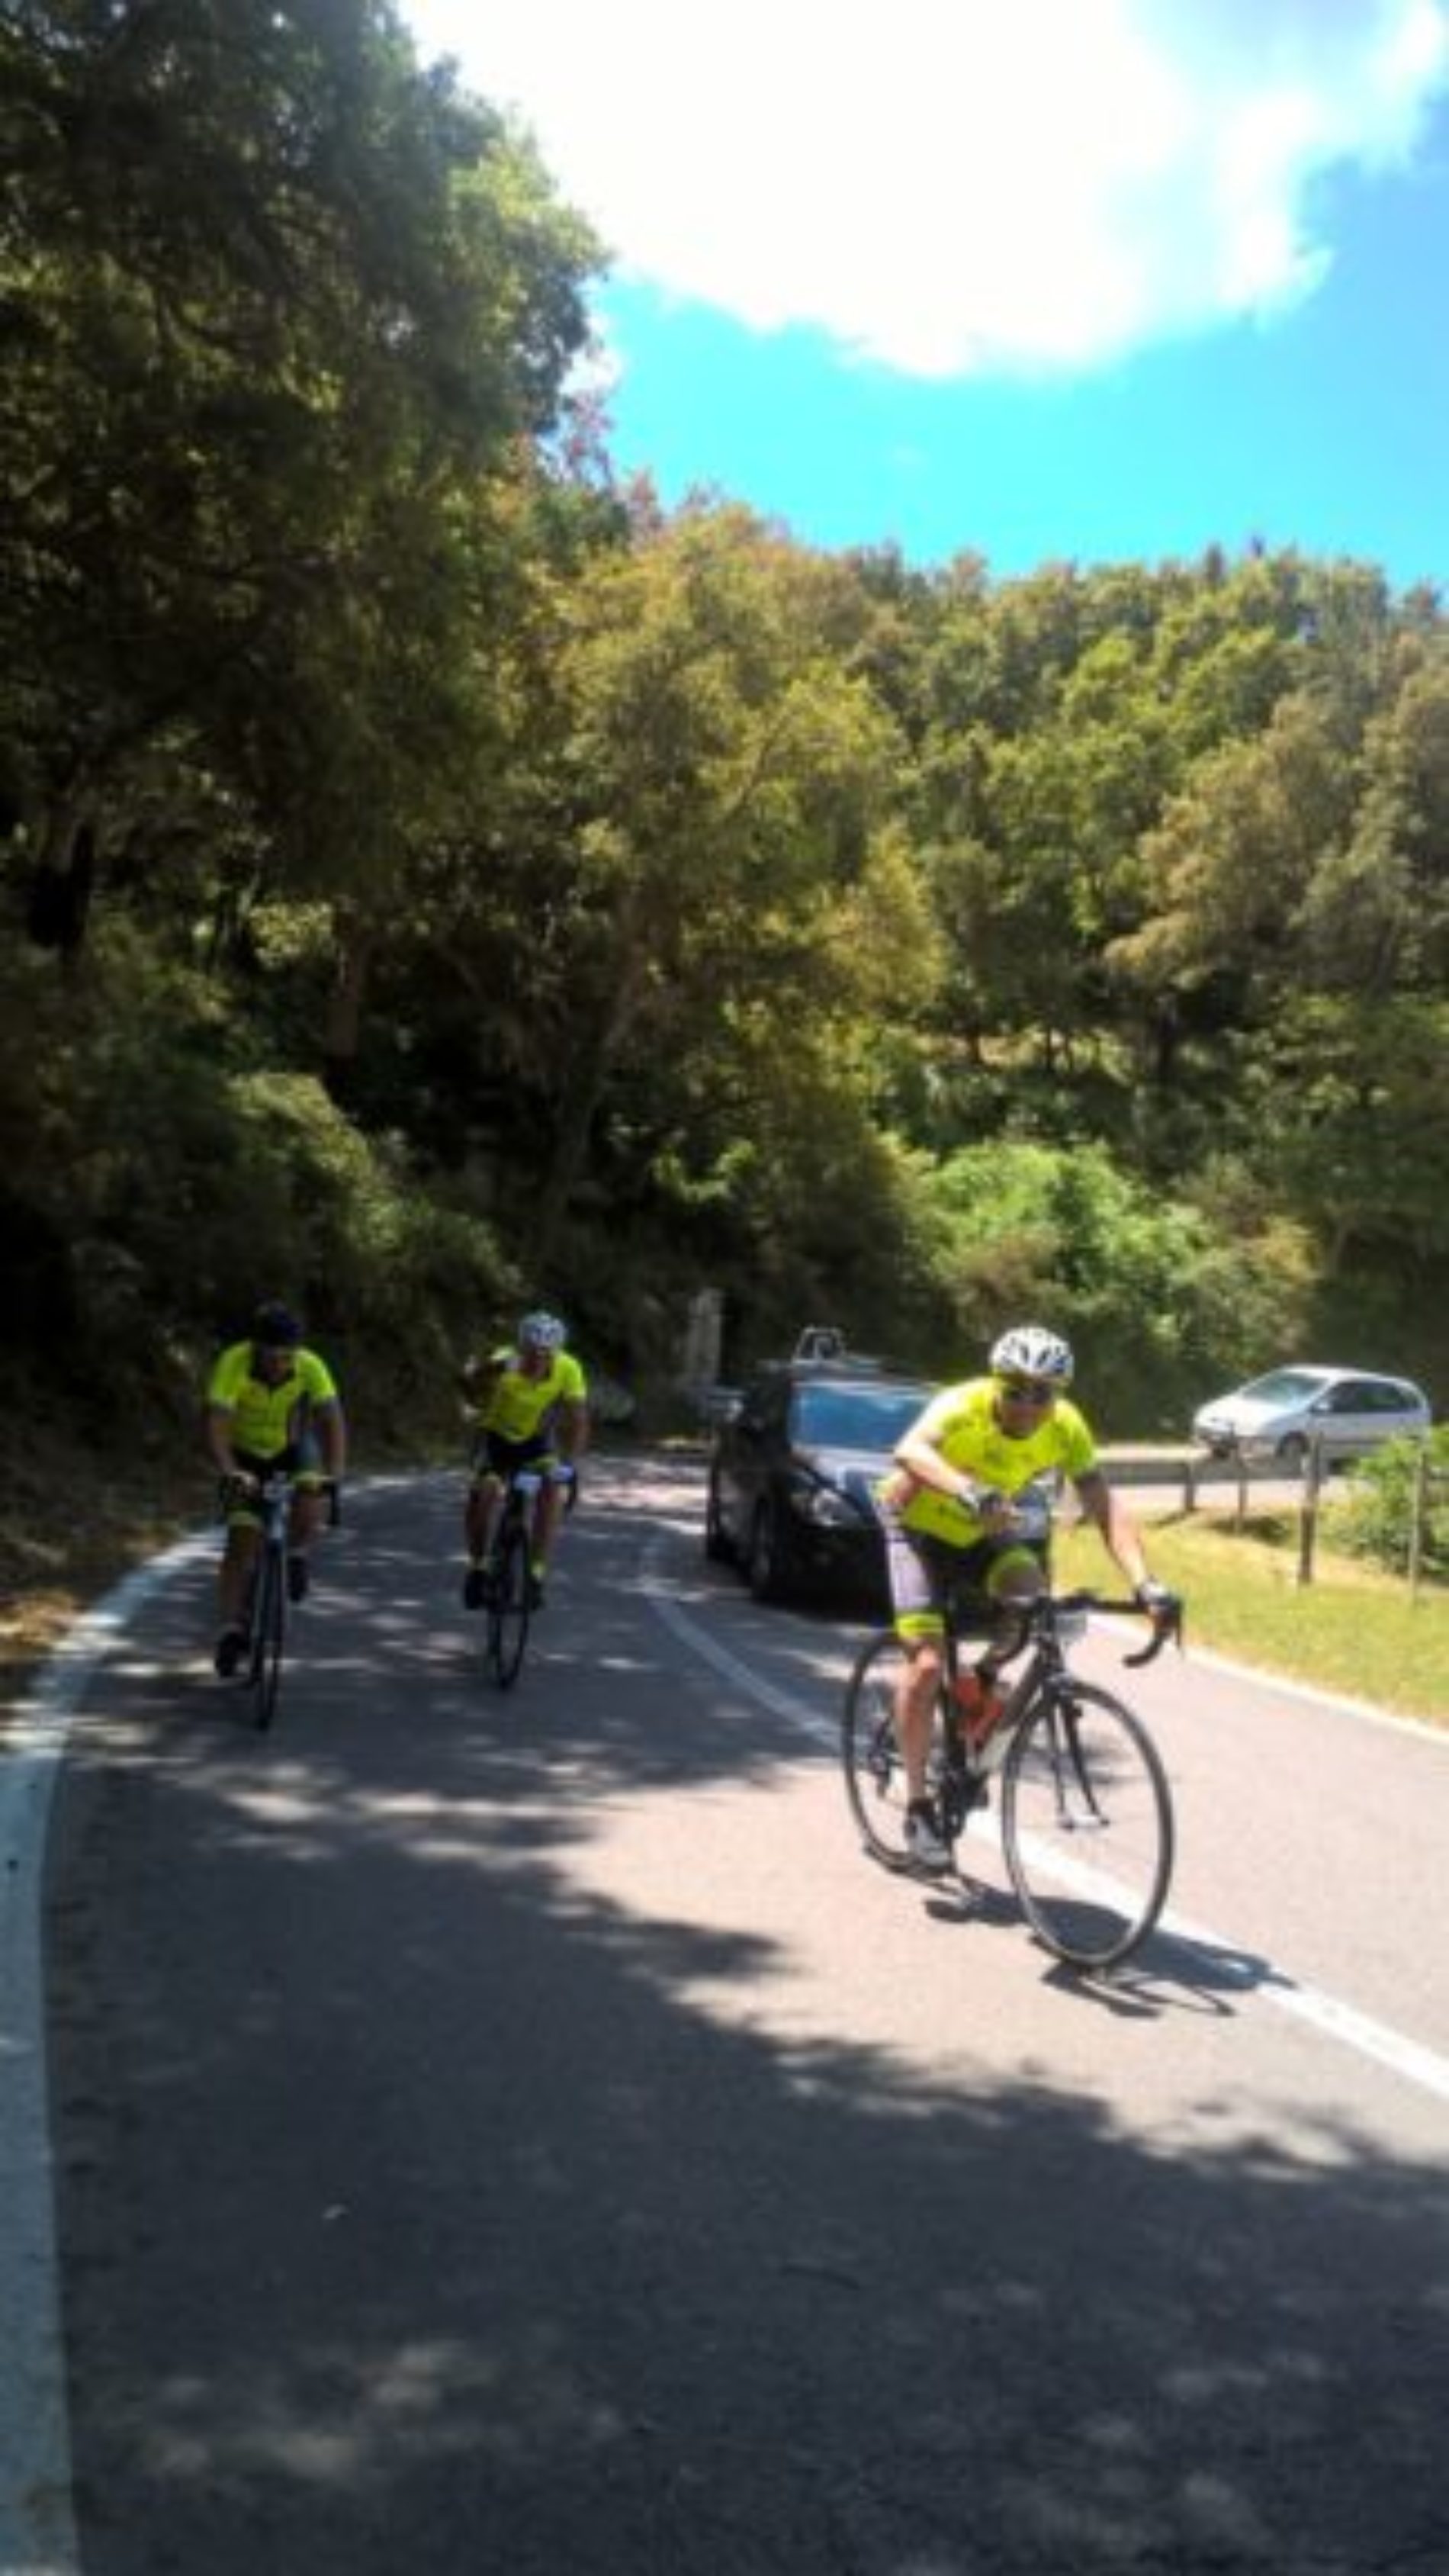 Ciclisti barresi a pietrini alla 9 Granfondo delle Madonie: ” Un percorso bellissimo in bicicletta lungo il Parco Regionale “